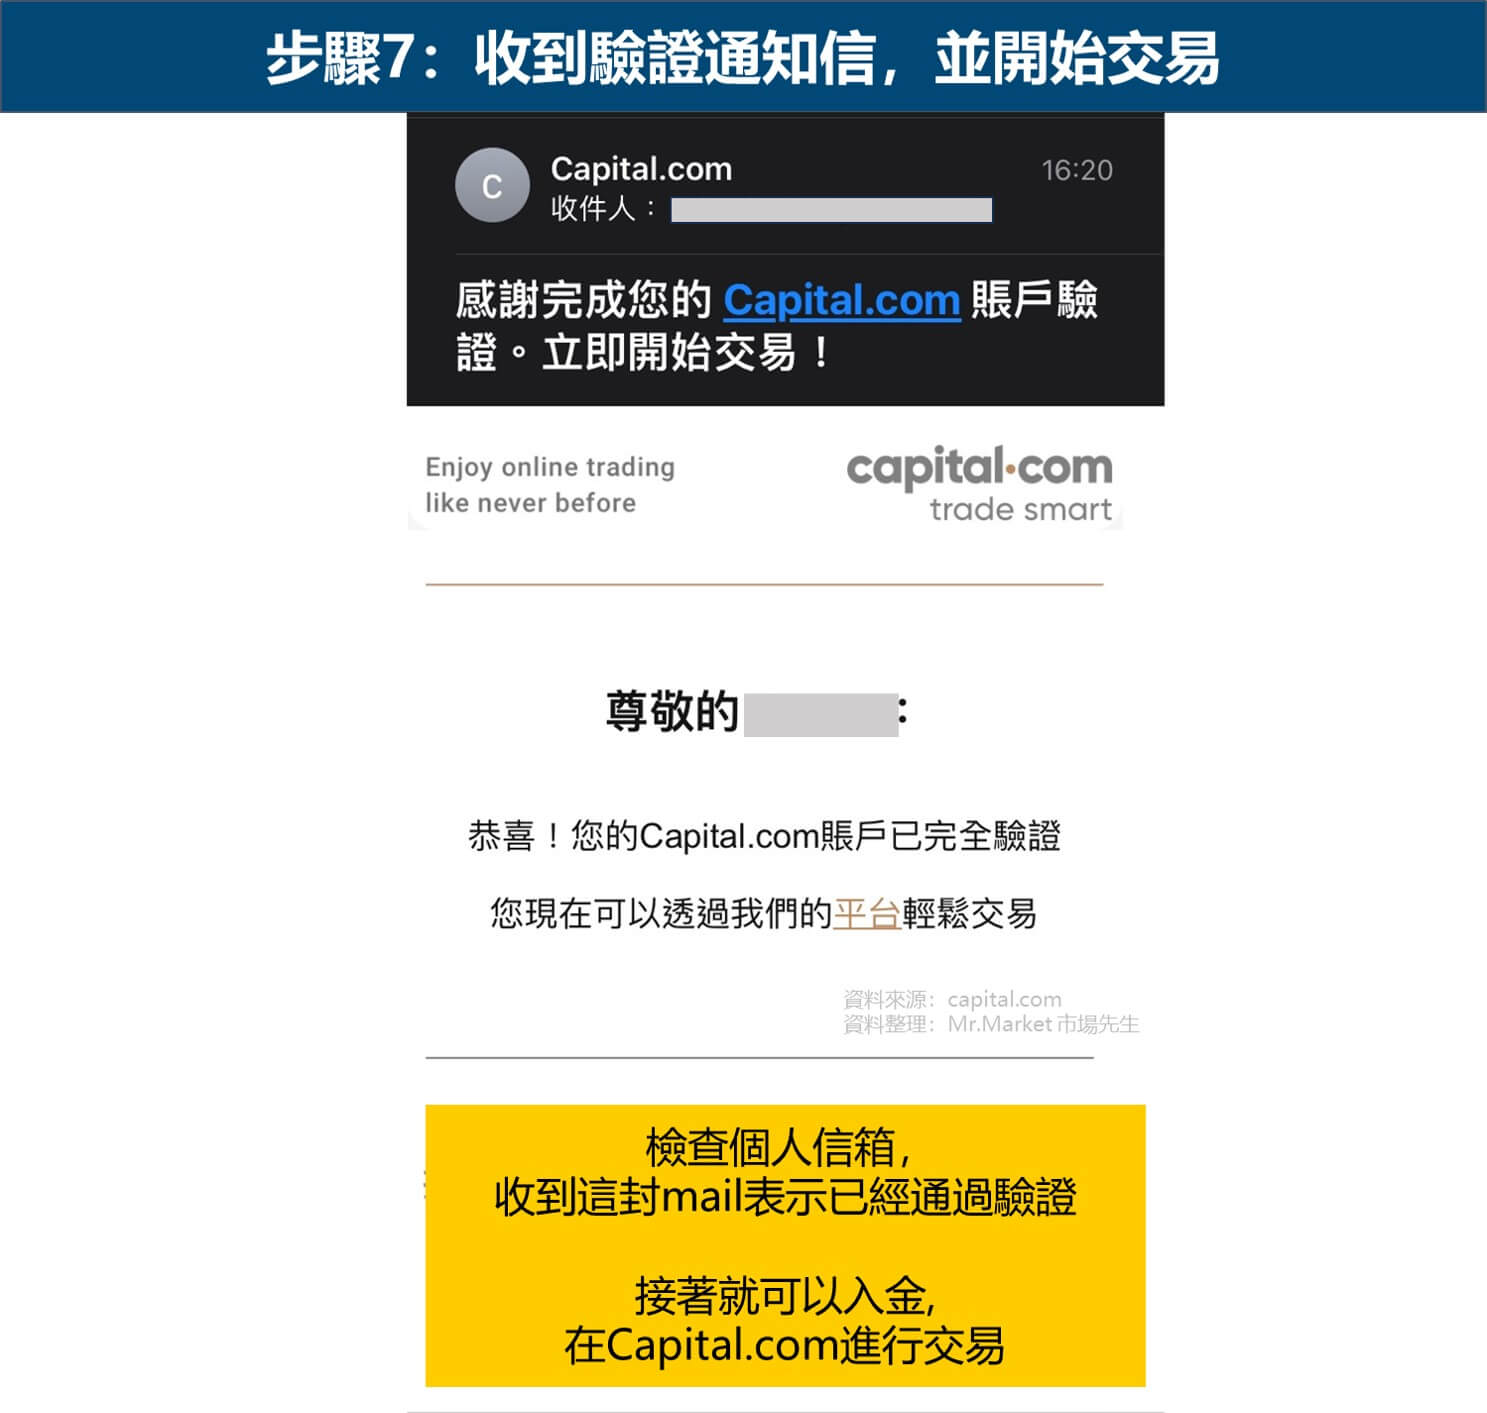 capital.com開戶步驟7: 收到通知信